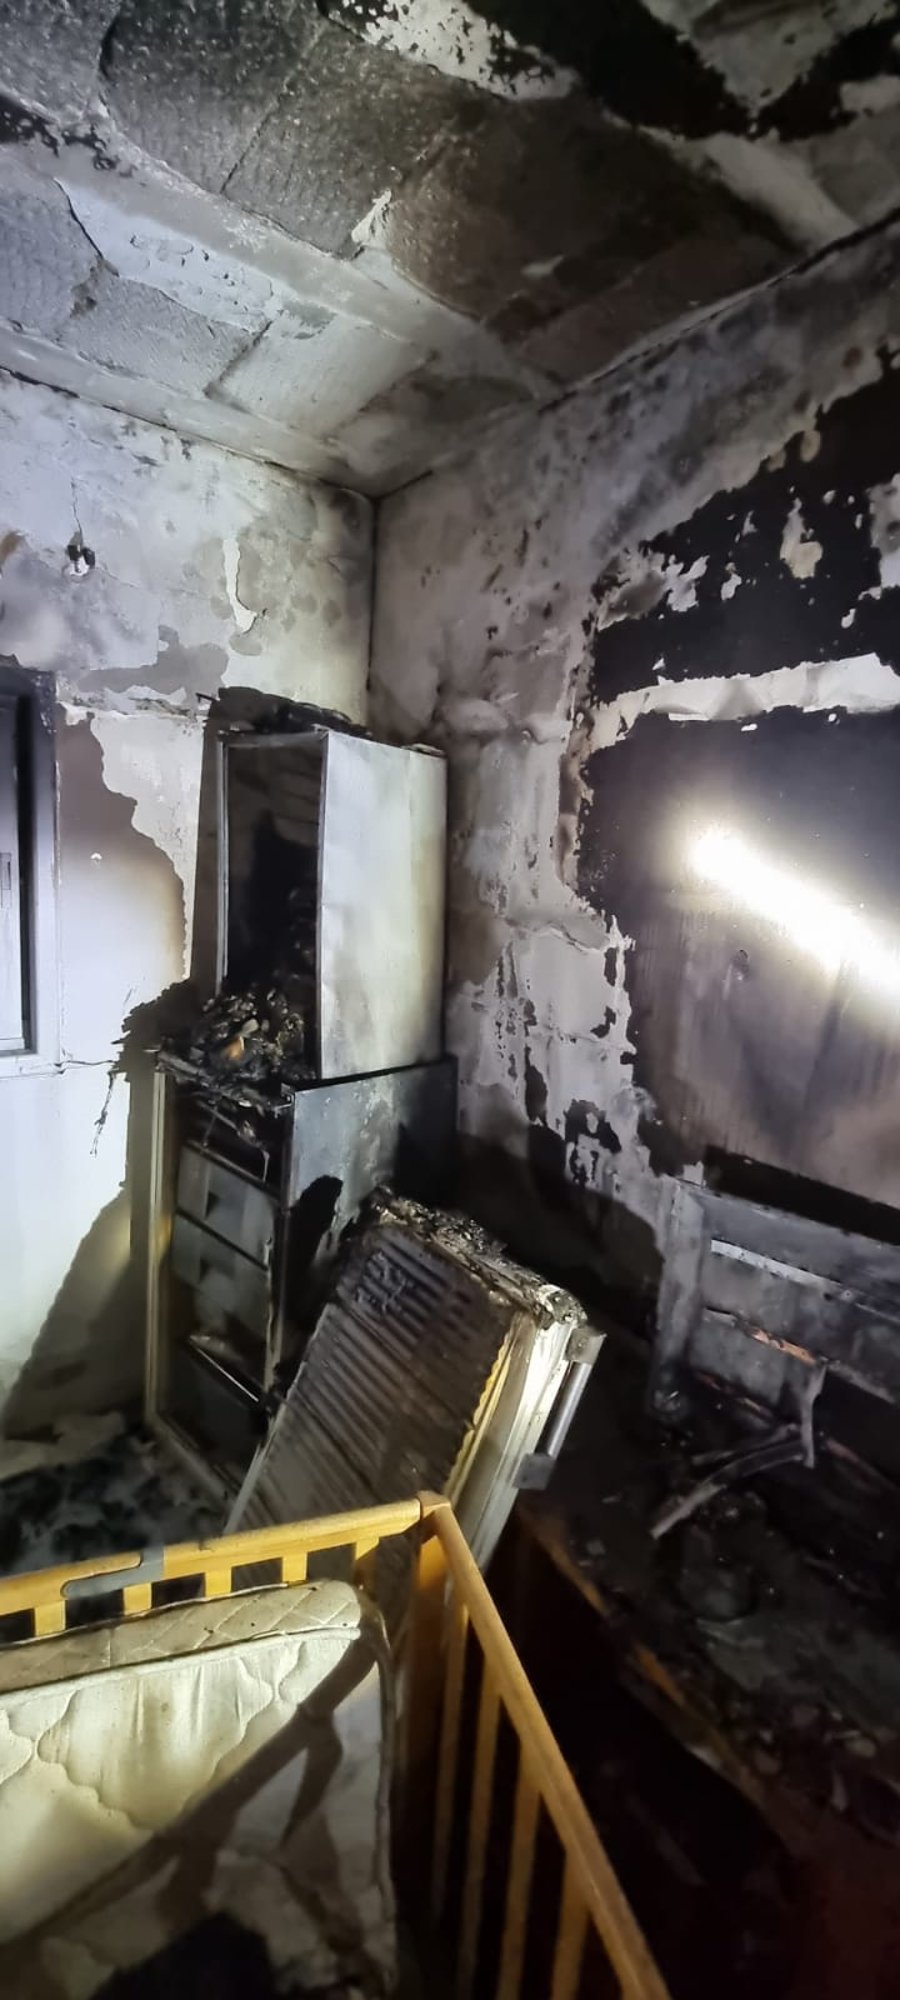 שריפה בדירה בבני ברק: שני תוכים מתו